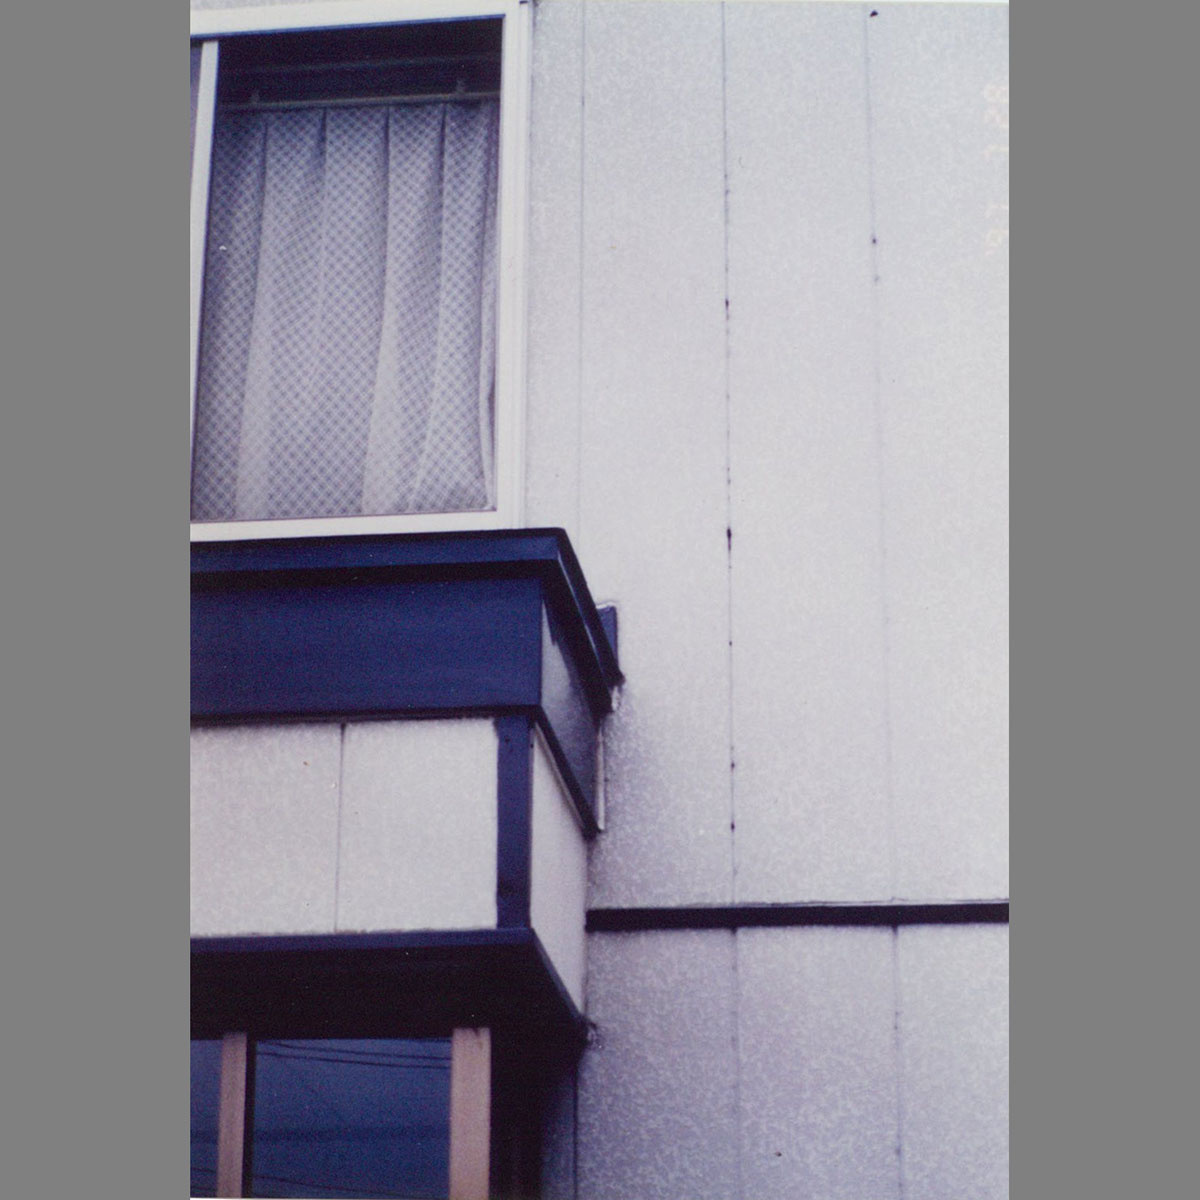 札幌の中古住宅はいつ建ったかで大違い 寒さ 目に見えない壁内の結露 いえズーム Iezoom